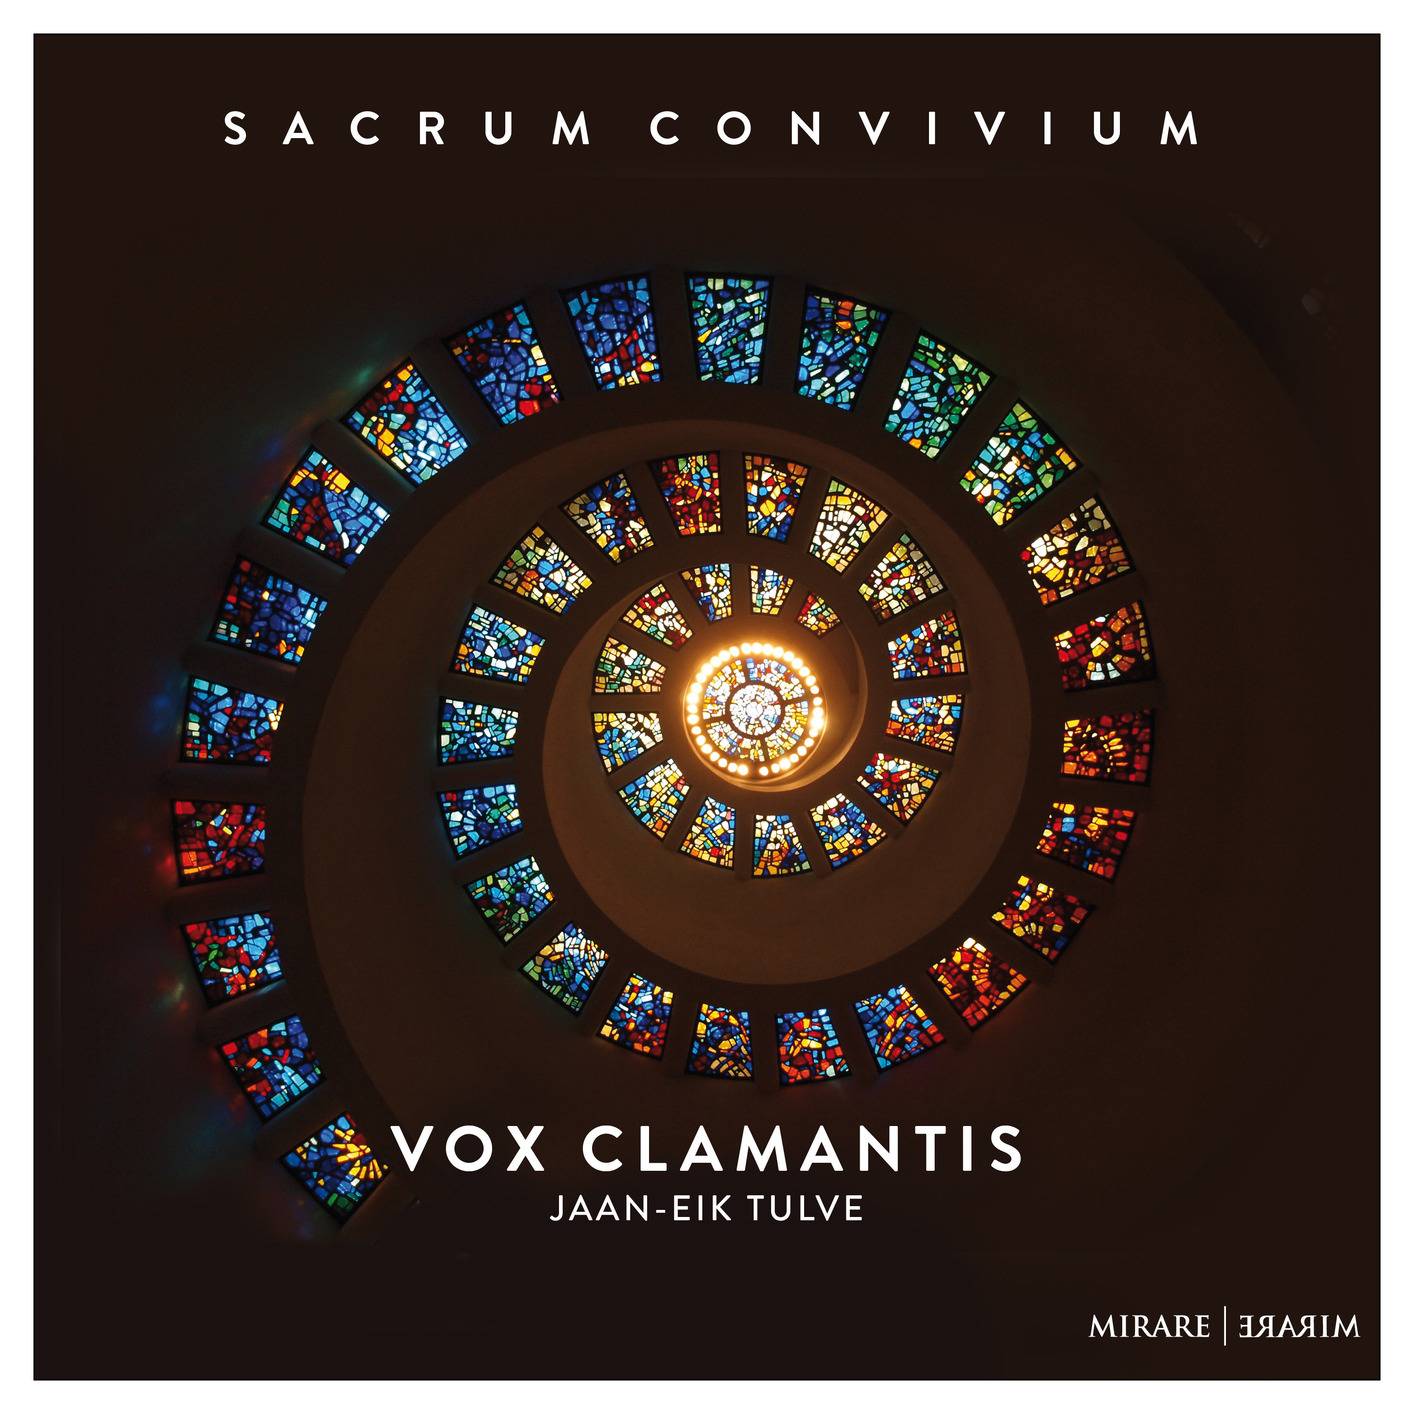 Vox Clamantis & Jaan-Eik Tulve - Sacrum convivium (2018) [FLAC 24bit/44,1kHz]